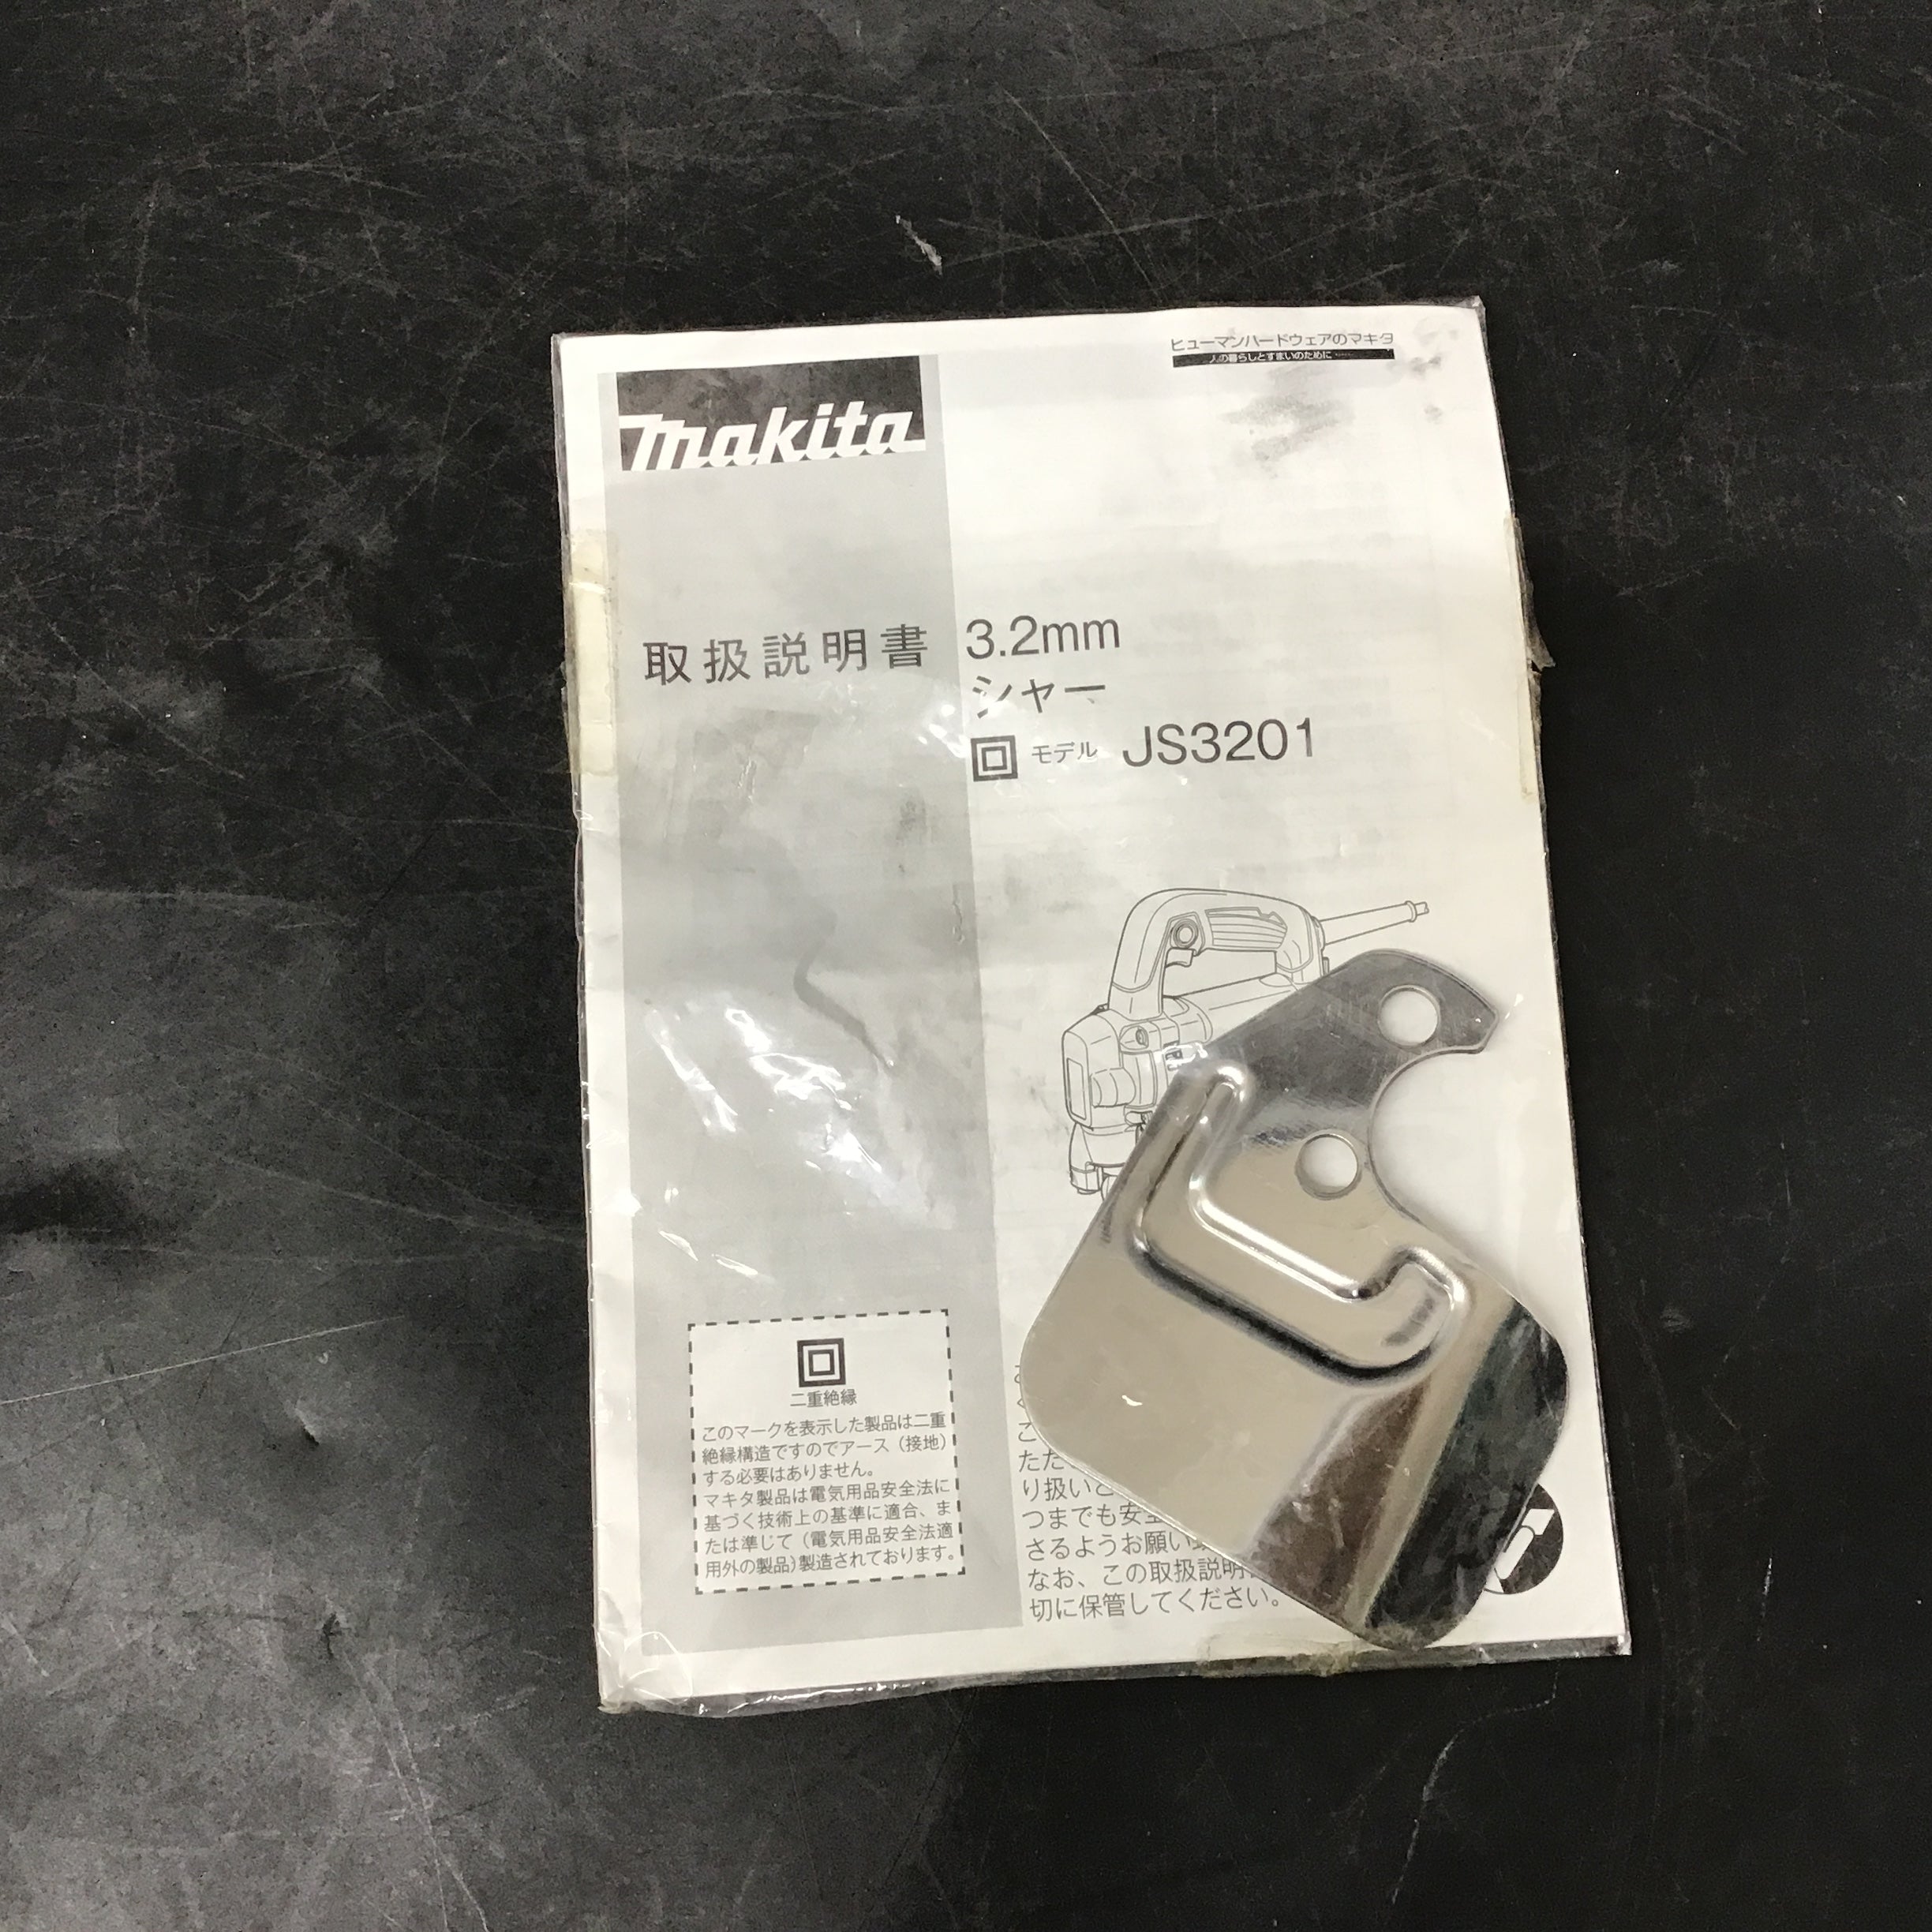 マキタ 3.2mmシャー JS3201 【桶川店】 アクトツールオンラインショップ